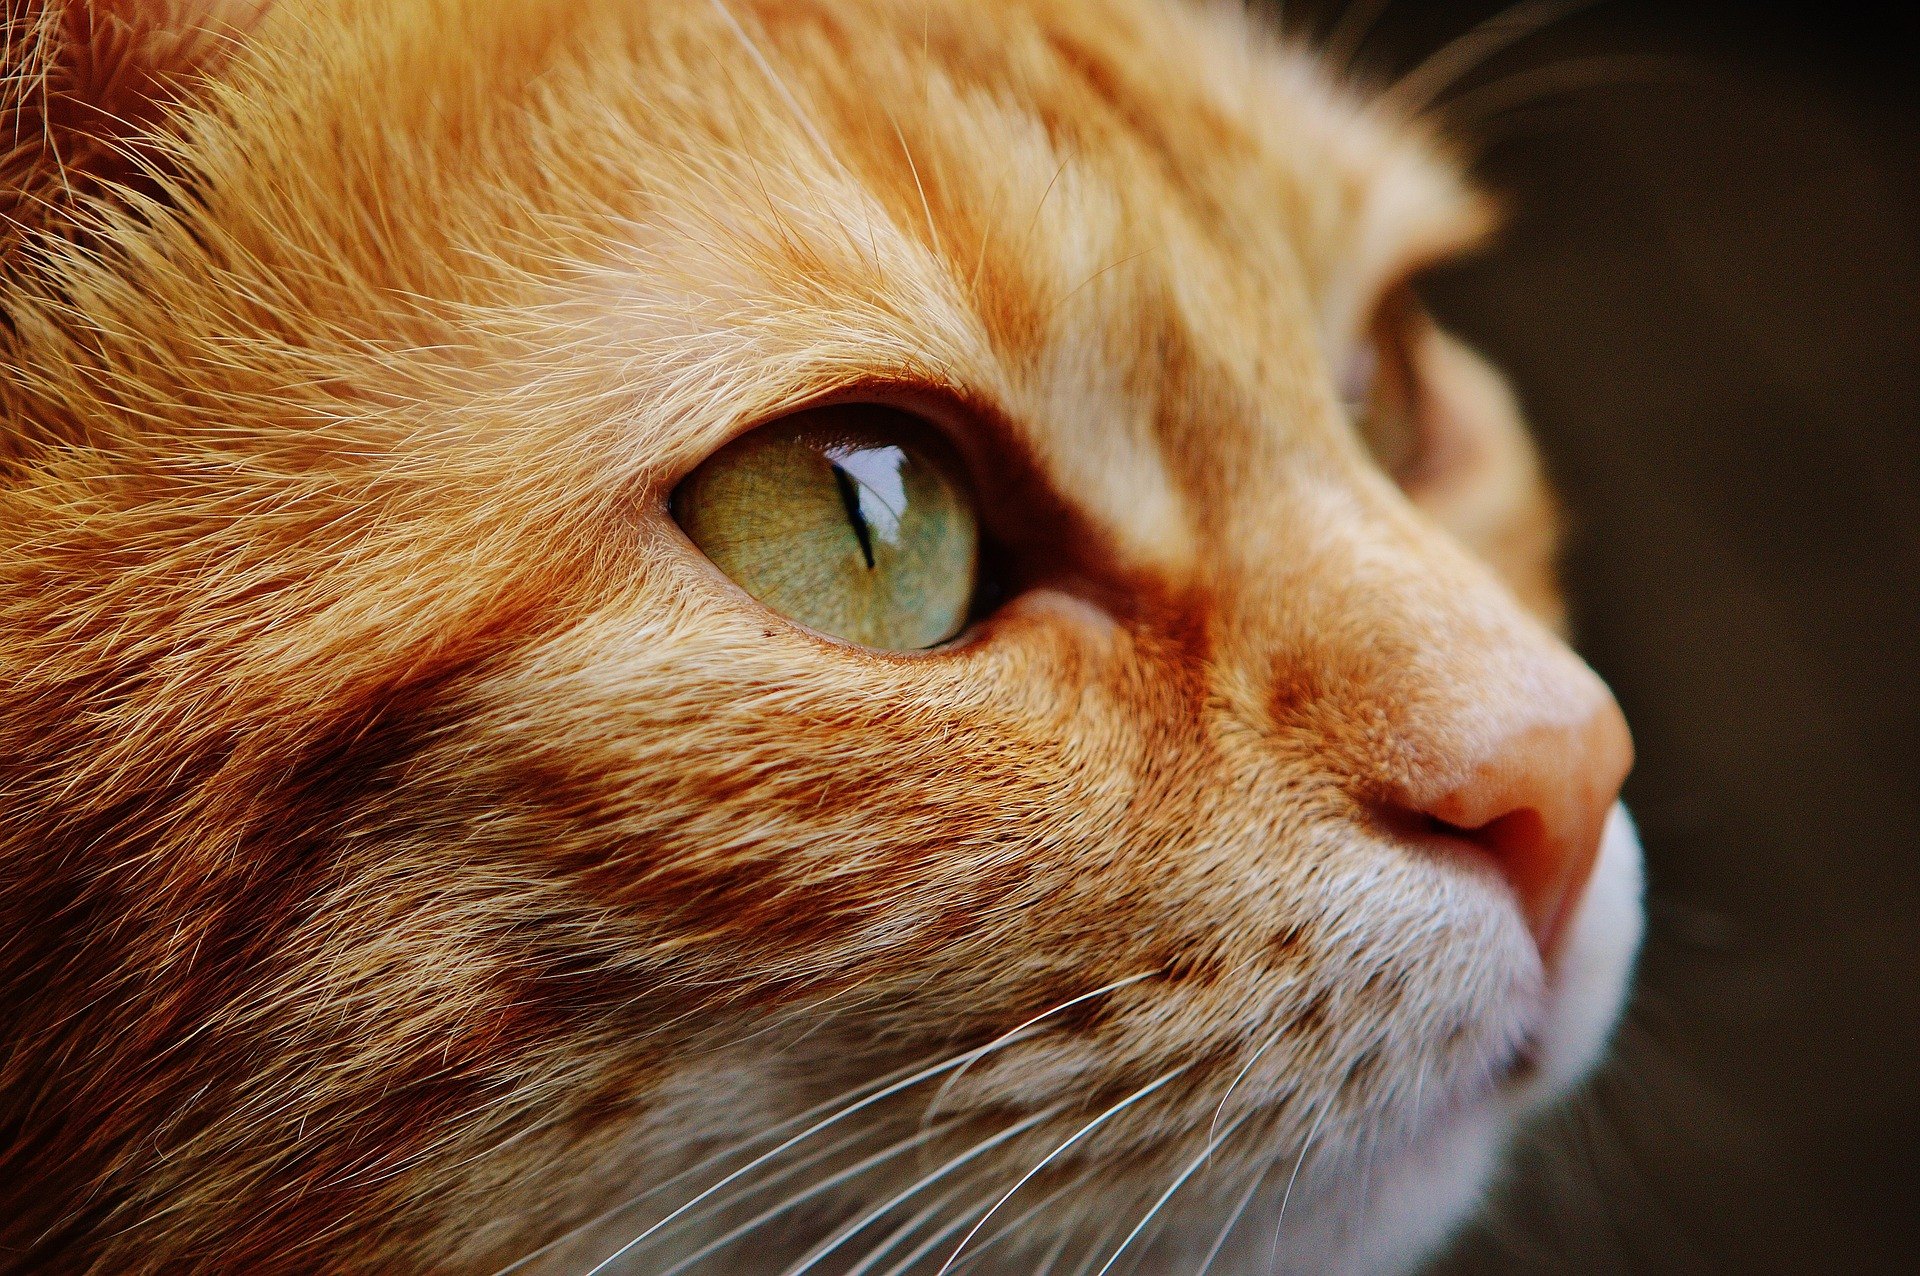 Die Augen von Katzen haben eine ziemlich ausgeprägte Struktur, die sich von der Anatomie des menschlichen Auges sehr unterscheidet.